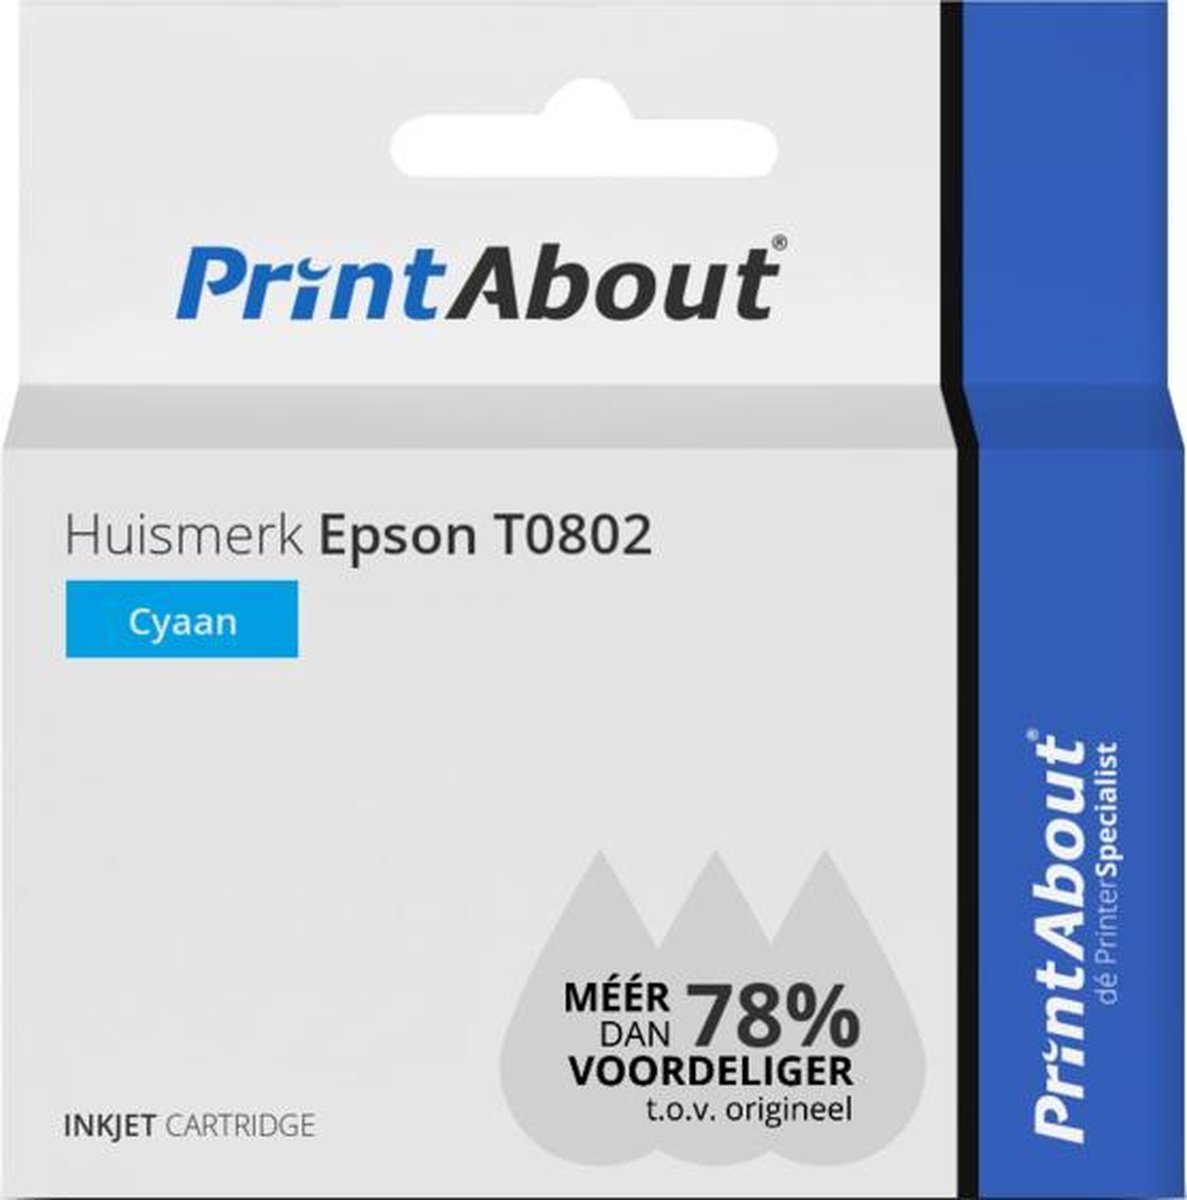 PrintAbout Huismerk Epson T0802 Inktcartridge Cyaan